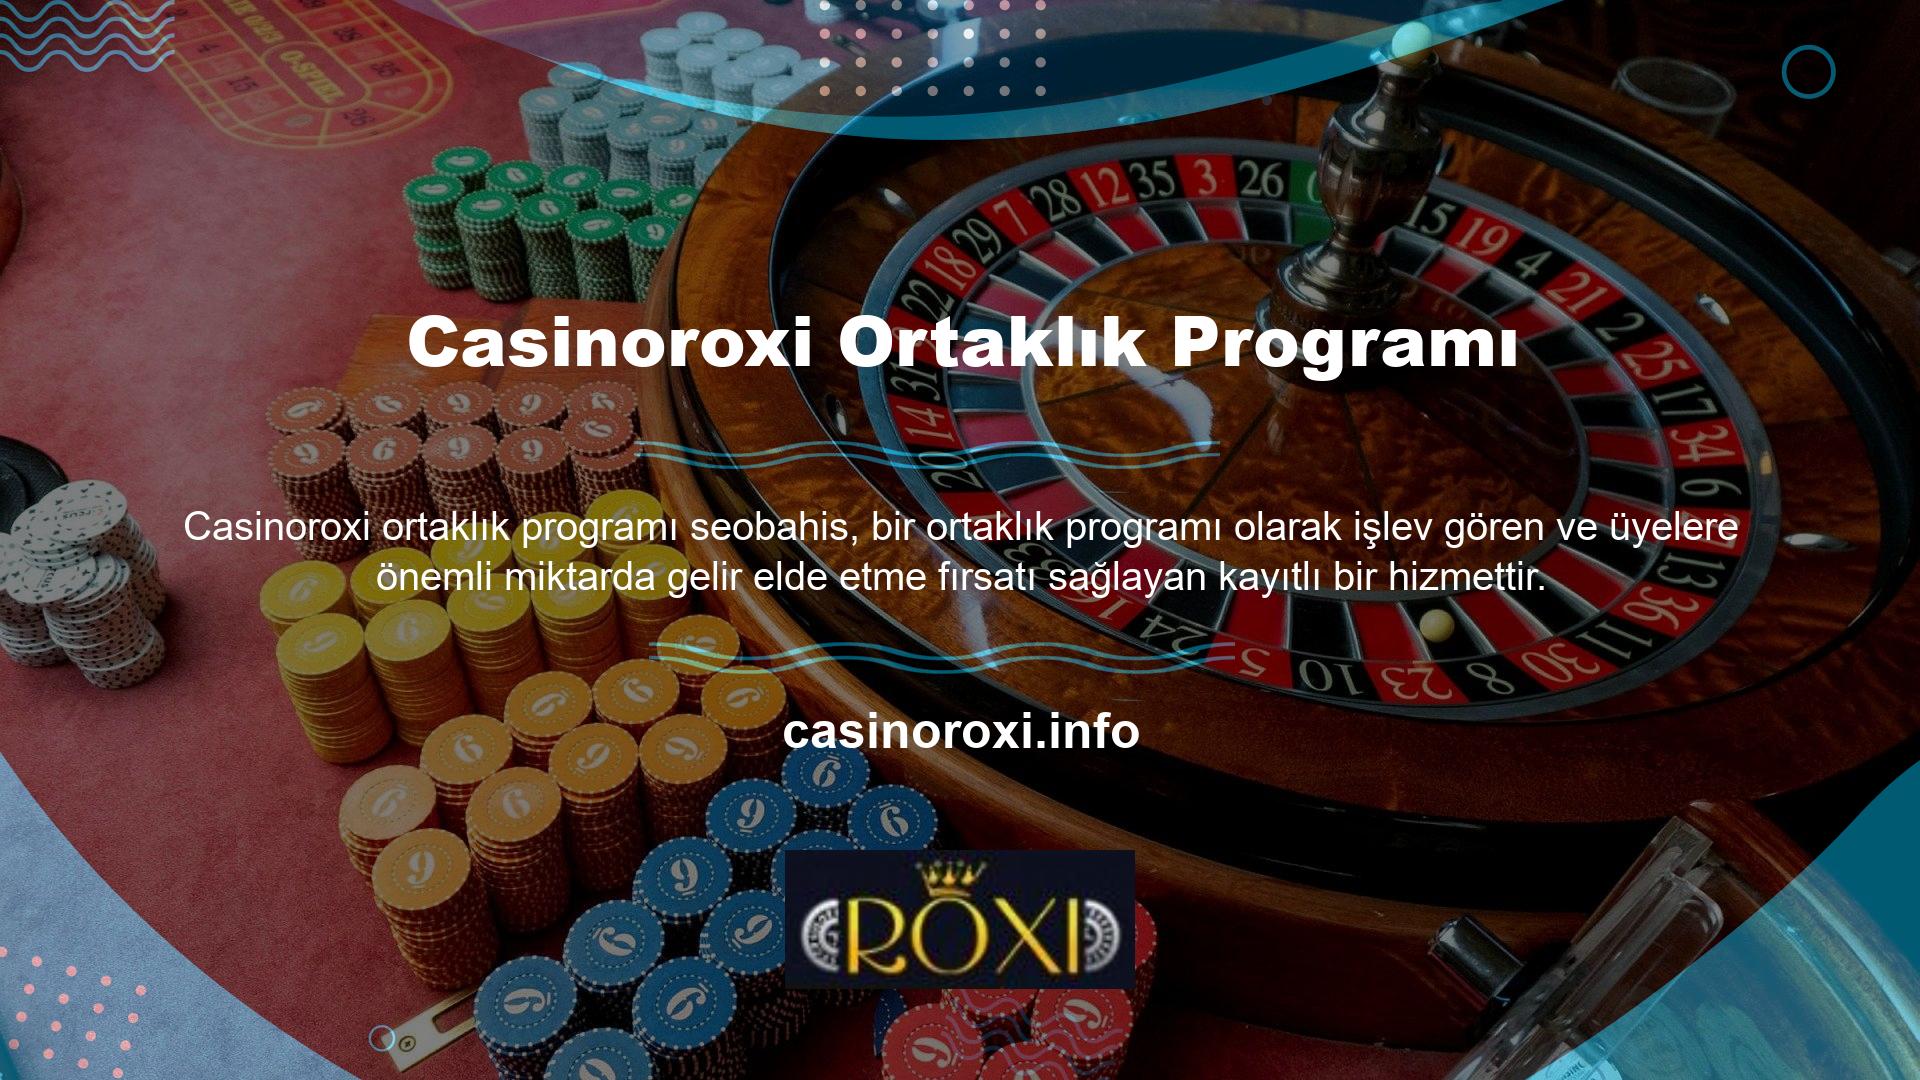 Bir Casinoroxi bayisi, müşterilerinin kendi web sitesine sahip olmasını ister